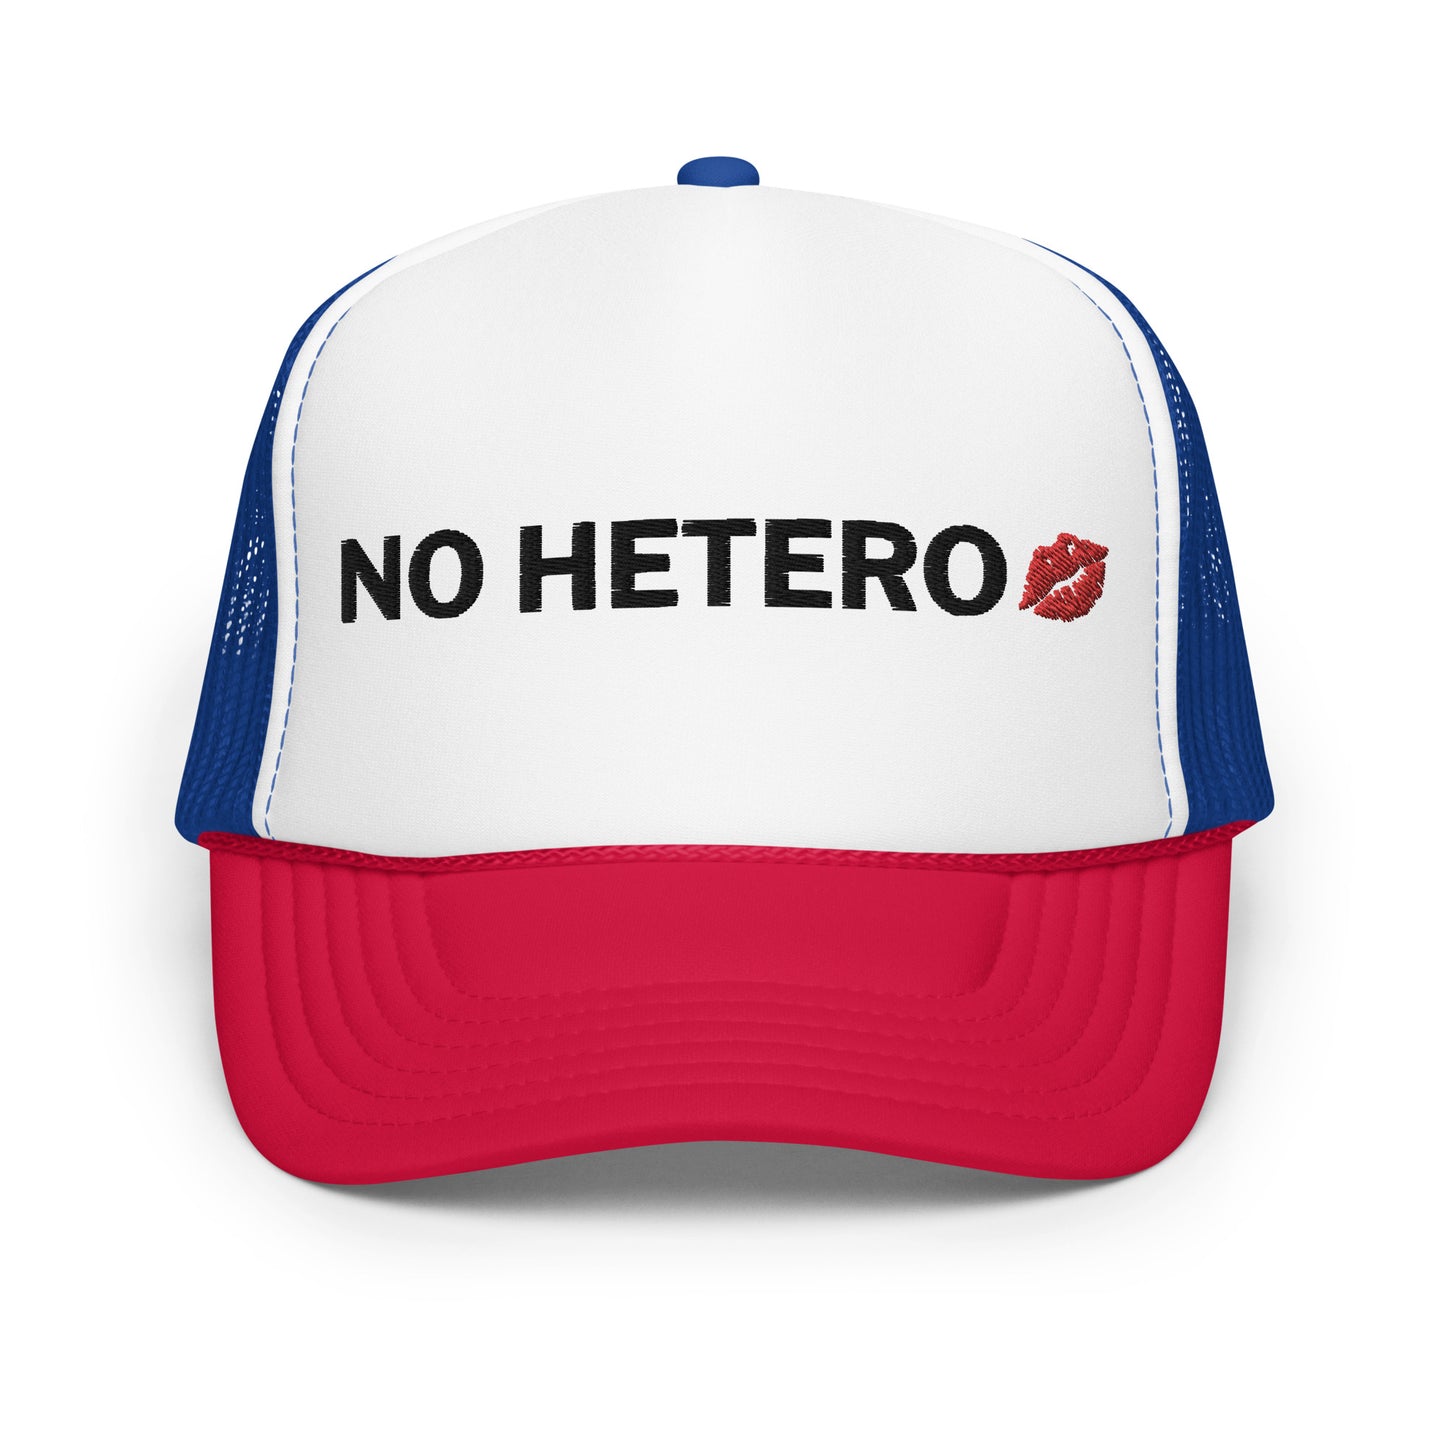 No Hetero Trucker Hat